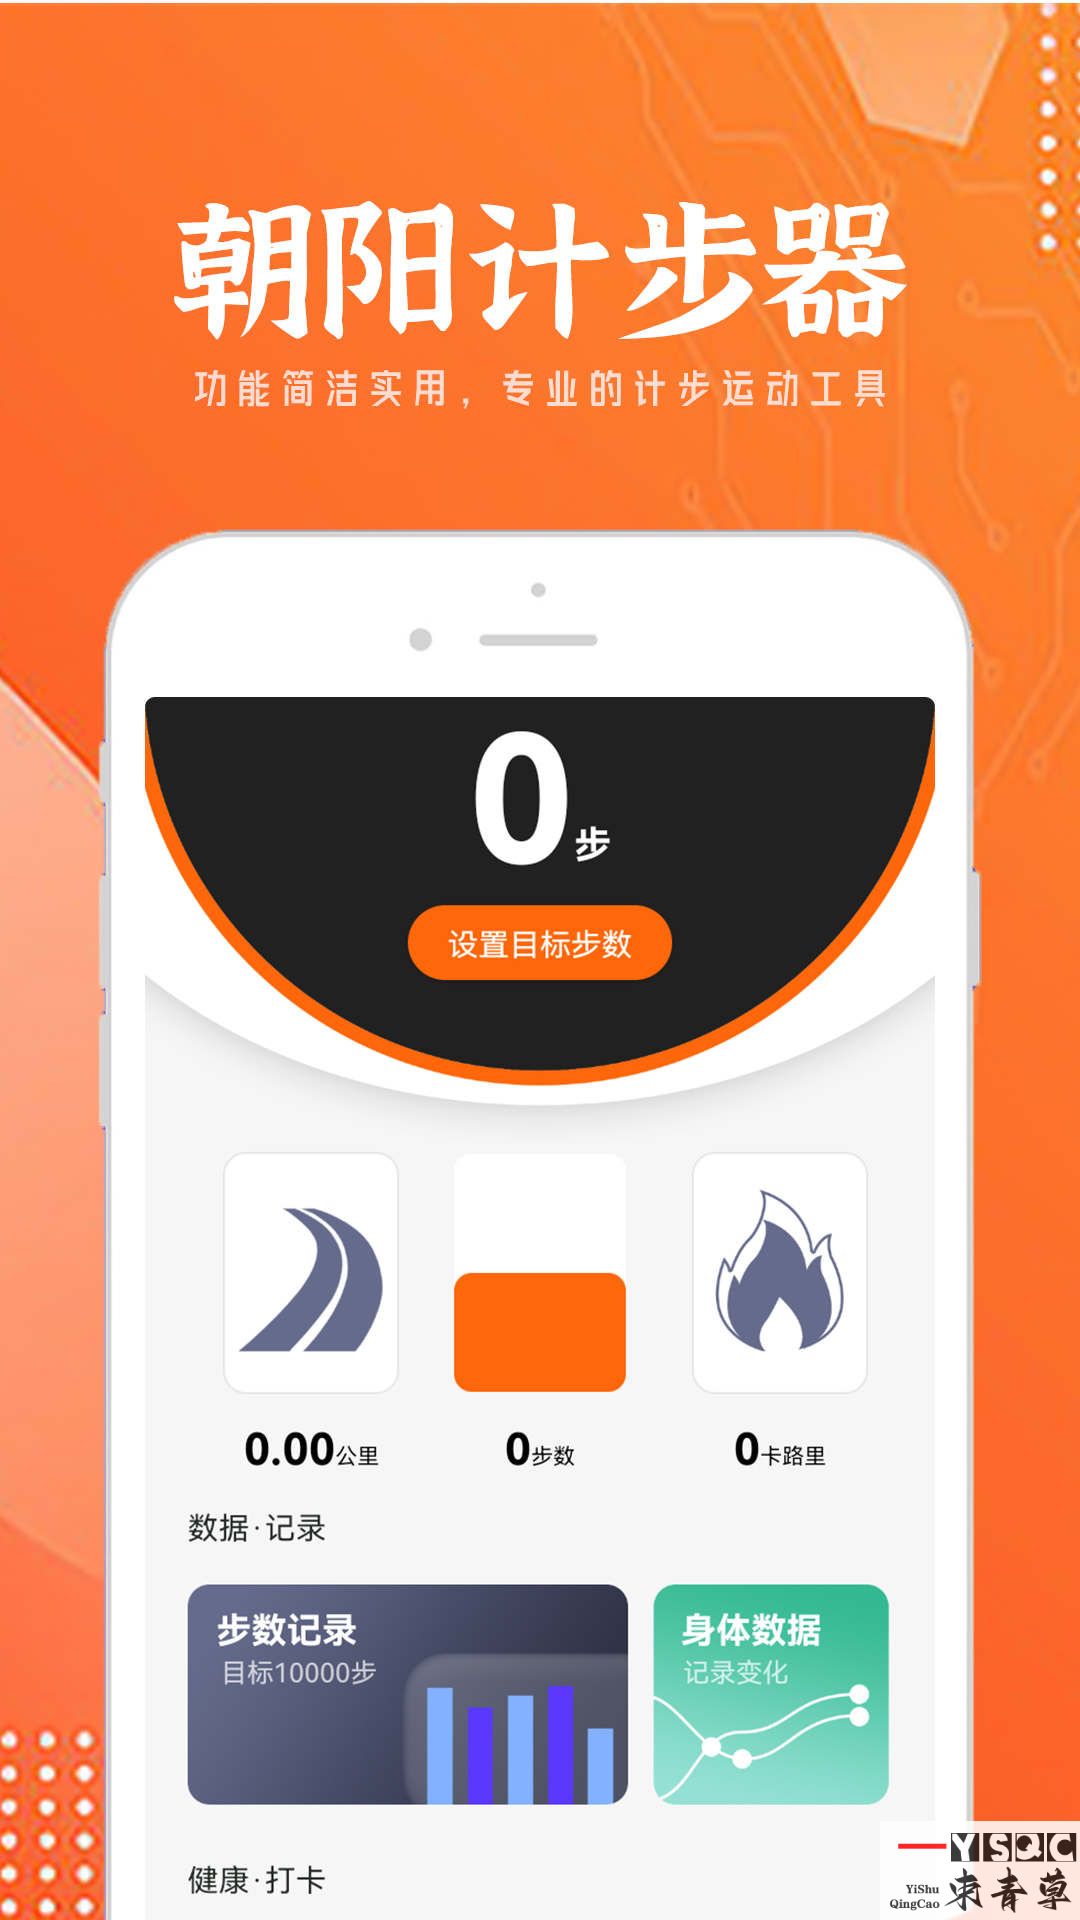 朝阳计步器app,朝阳计步器安卓版